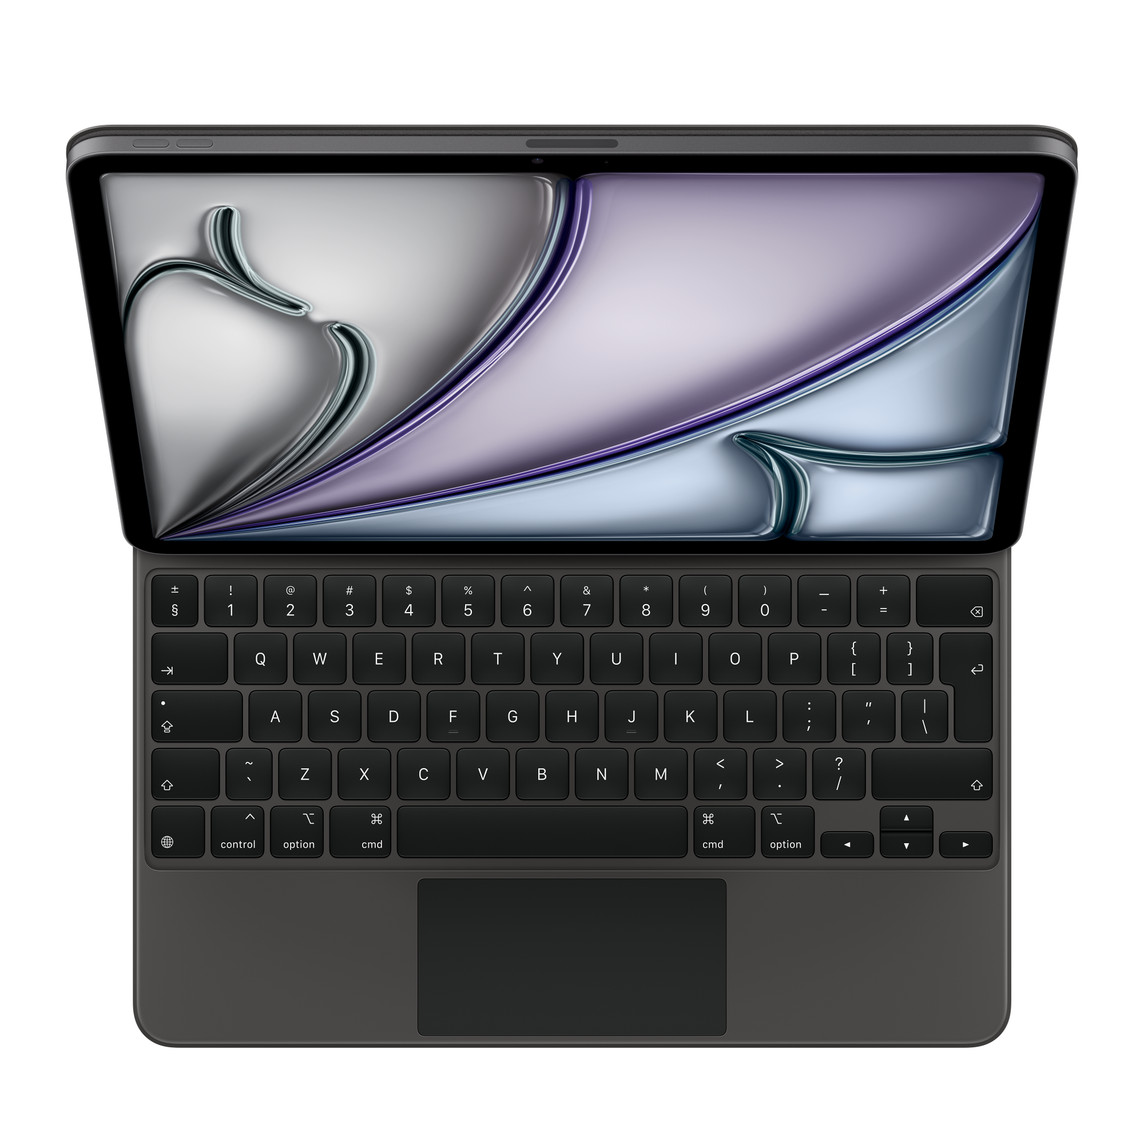 Vorderansicht des Magic Keyboard in Schwarz mit passendem 12,9" iPad Pro (5. Generation).